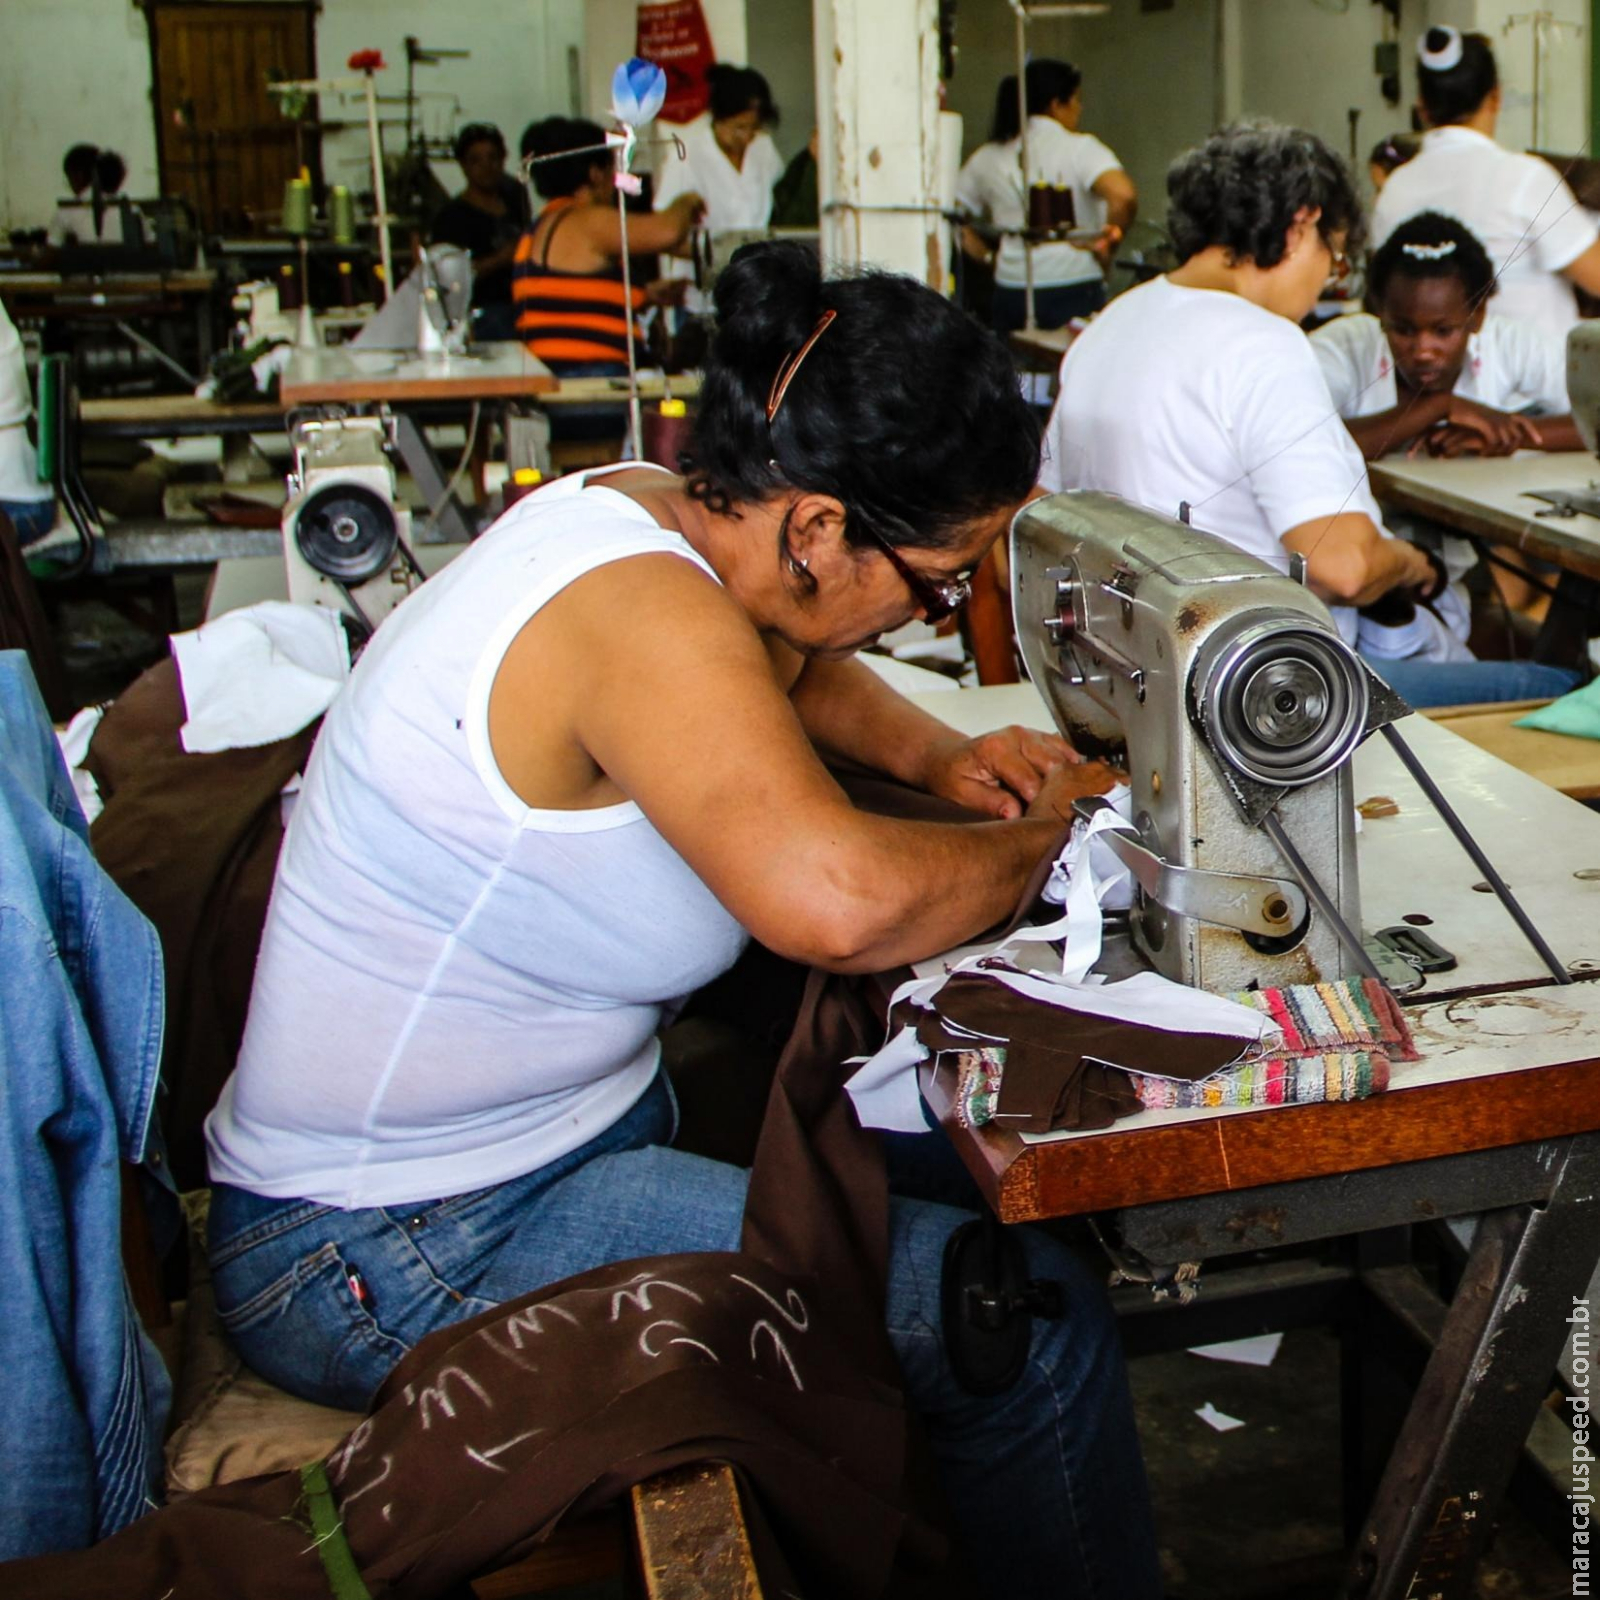 Região da América Latina e Caribe perdeu 26 milhões de empregos em um ano de pandemia